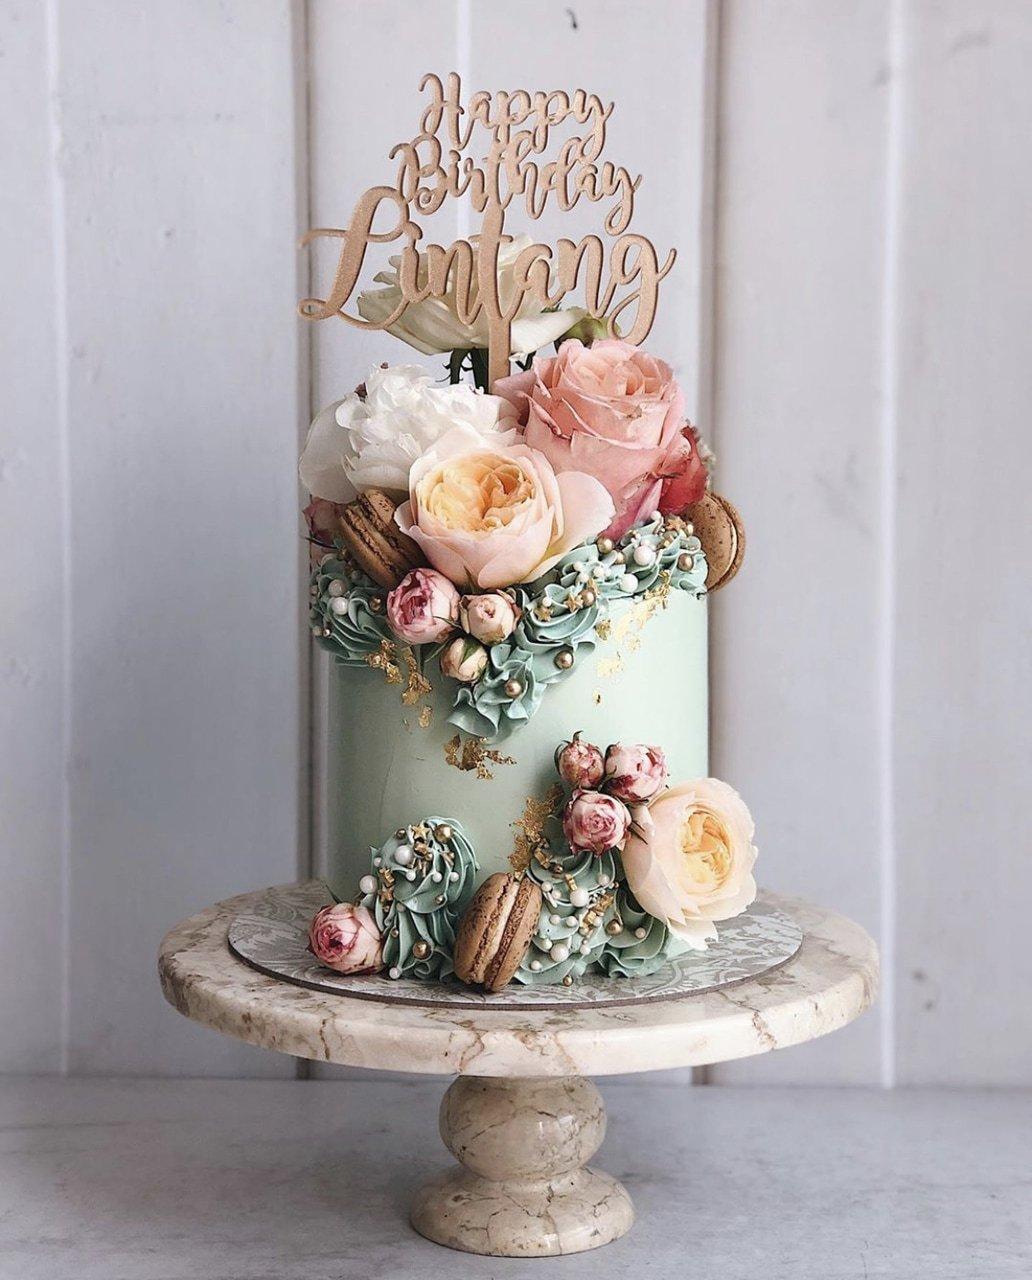 Bánh sinh nhật với hoa tươi cùng bánh macaron cực đẹp (Ảnh: internet)